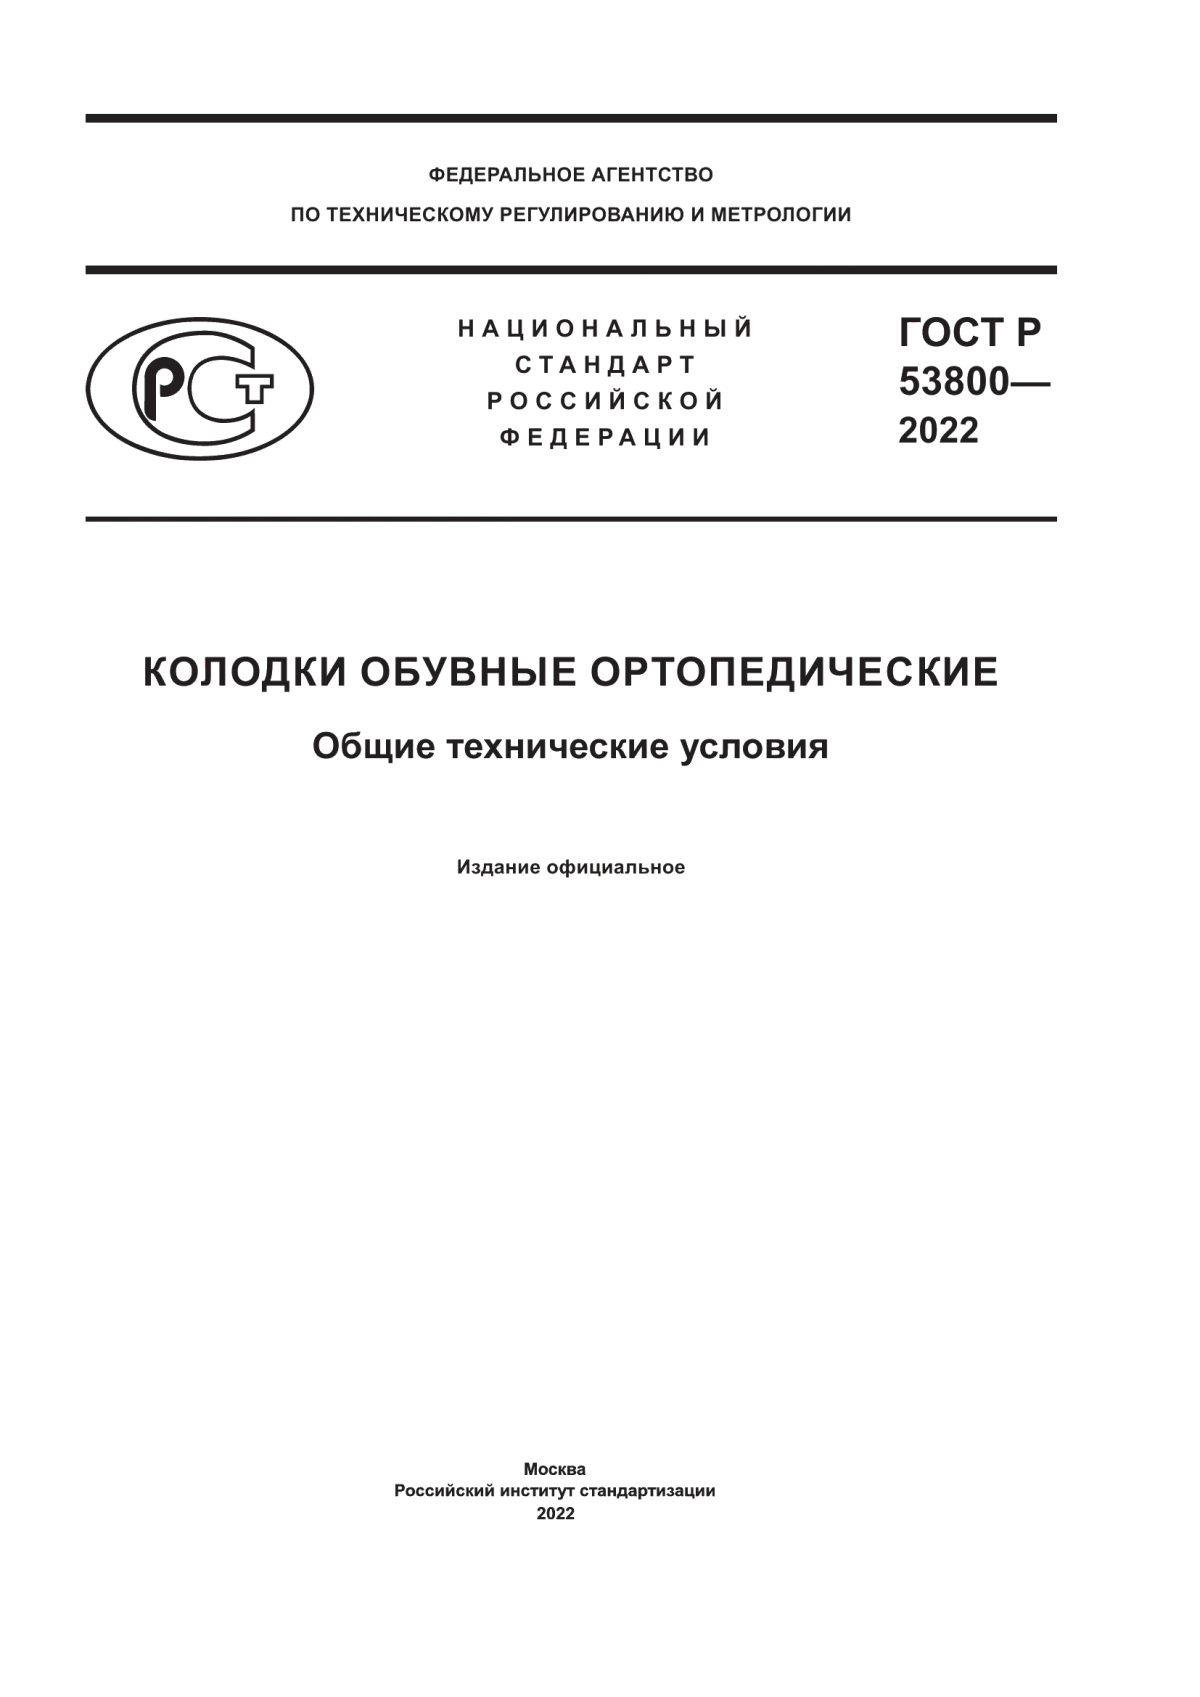 ГОСТ Р 53800-2022 Колодки обувные ортопедические. Общие технические условия